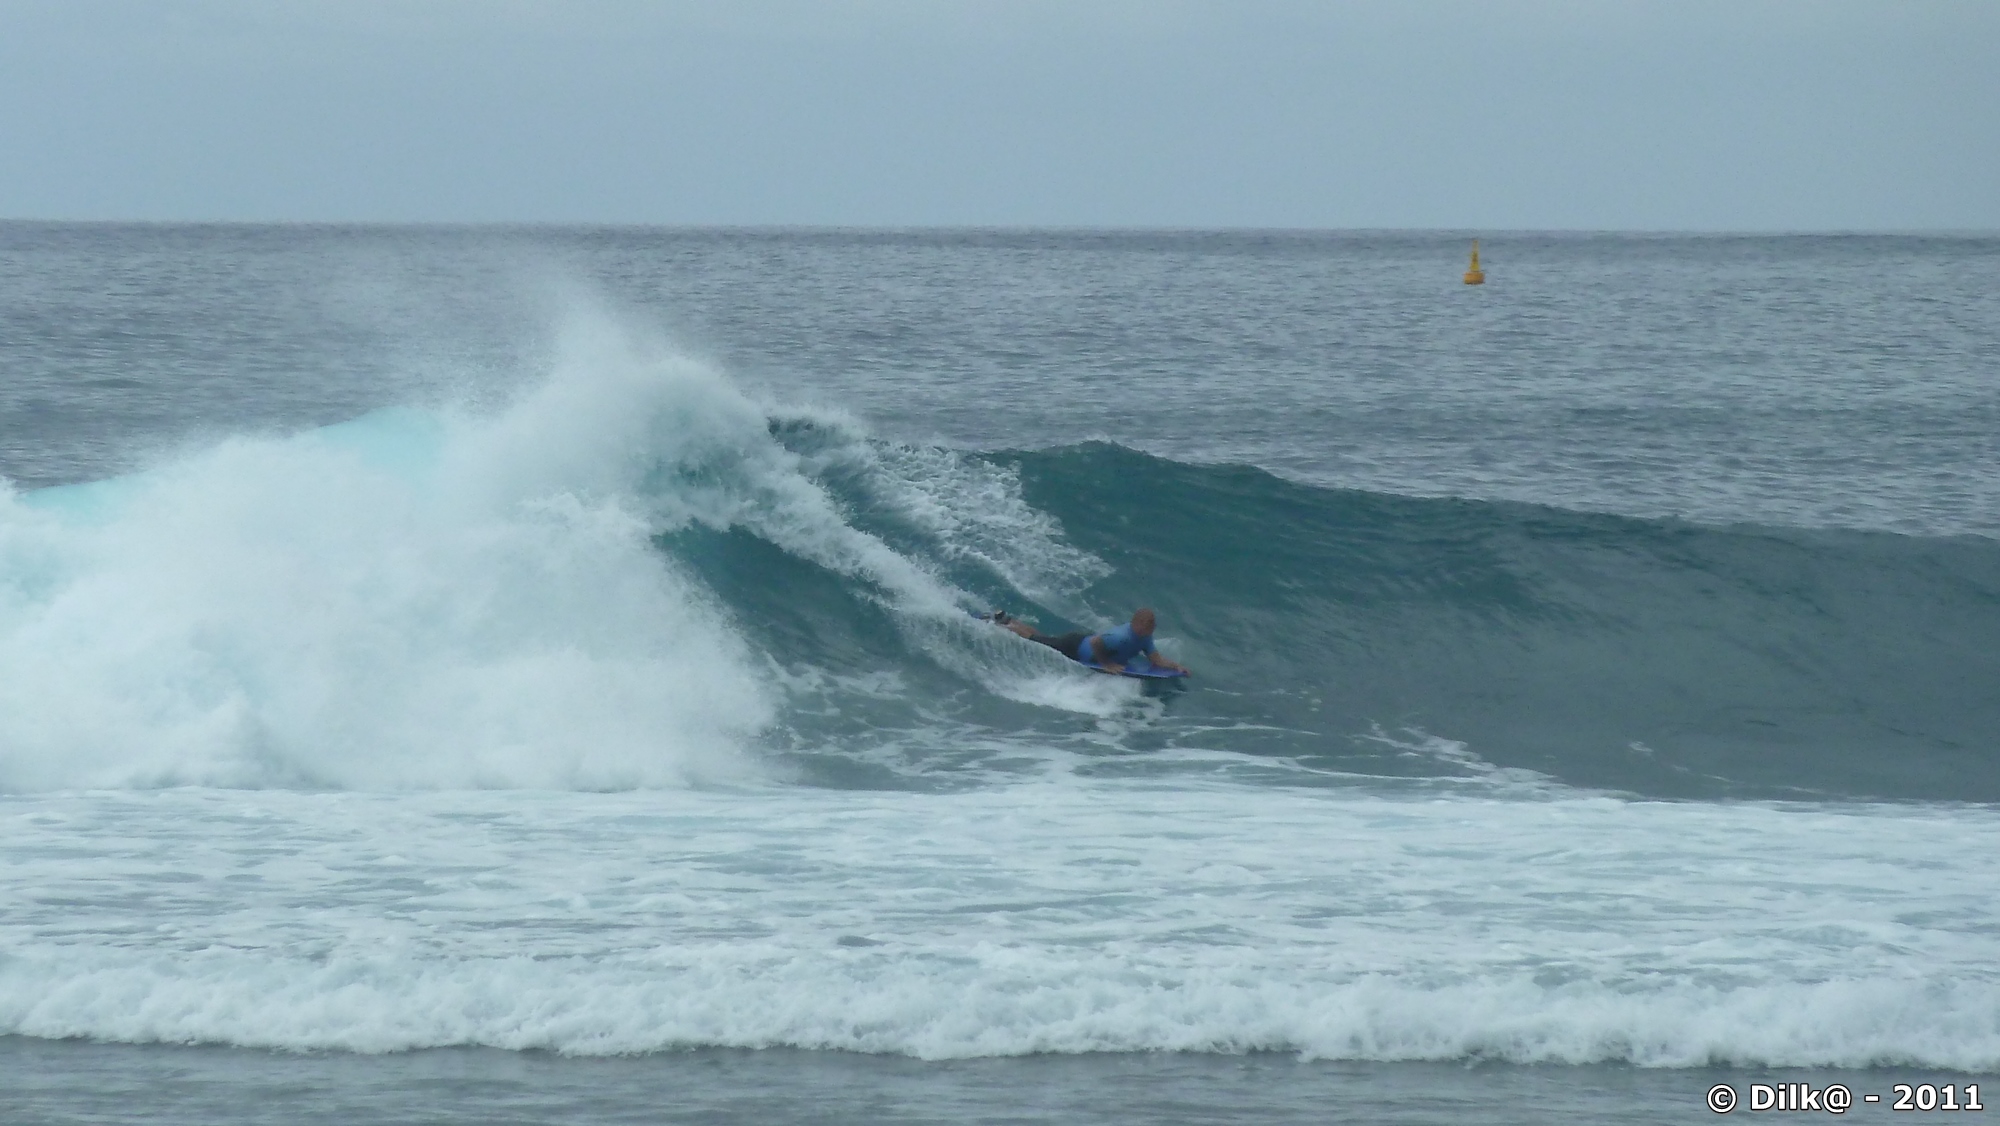 surfeur et belles vagues